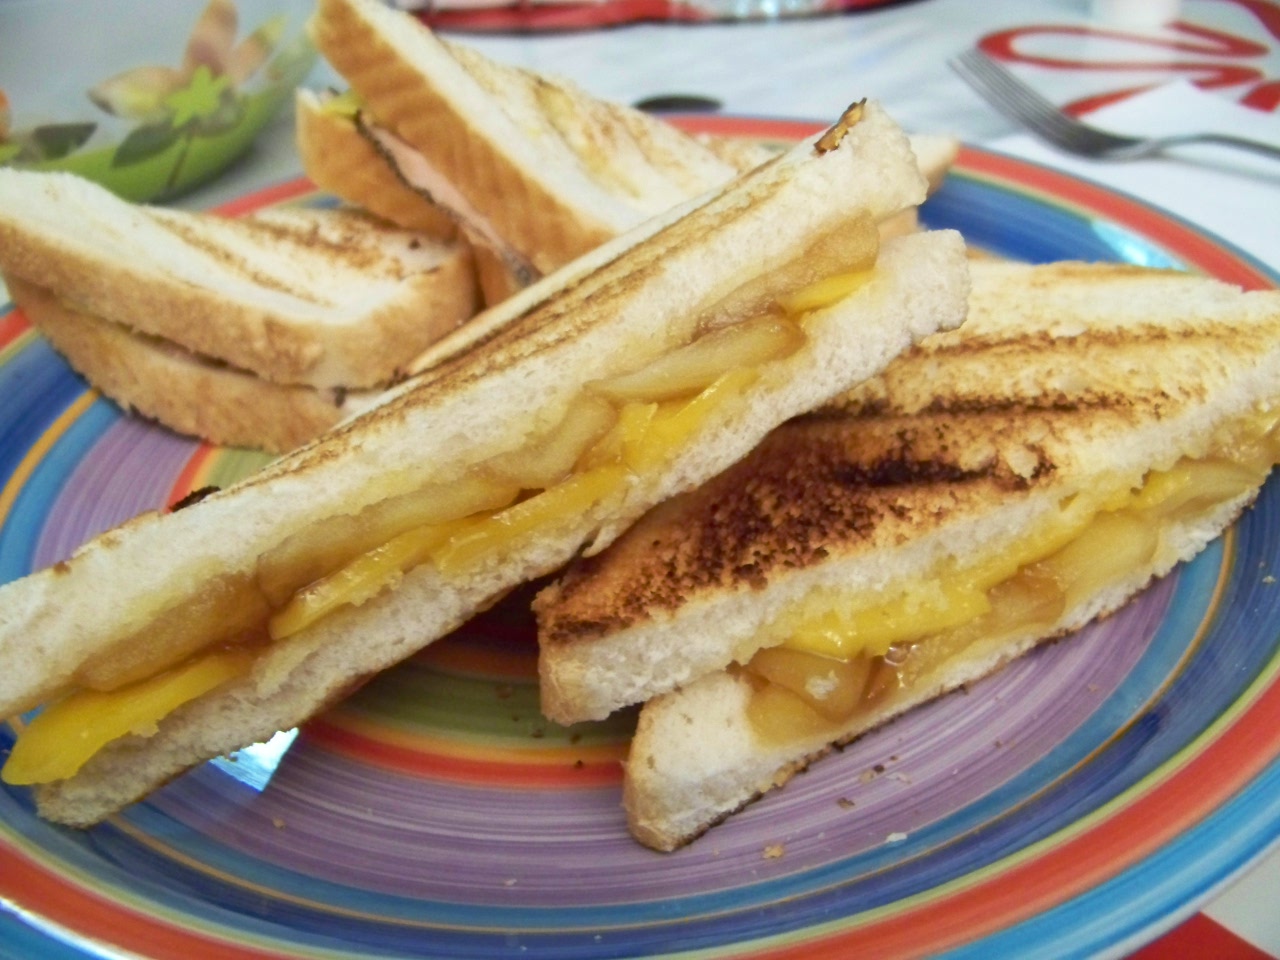 Receta que sándwich de queso fundido a la plancha (grilled cheese sandwich)